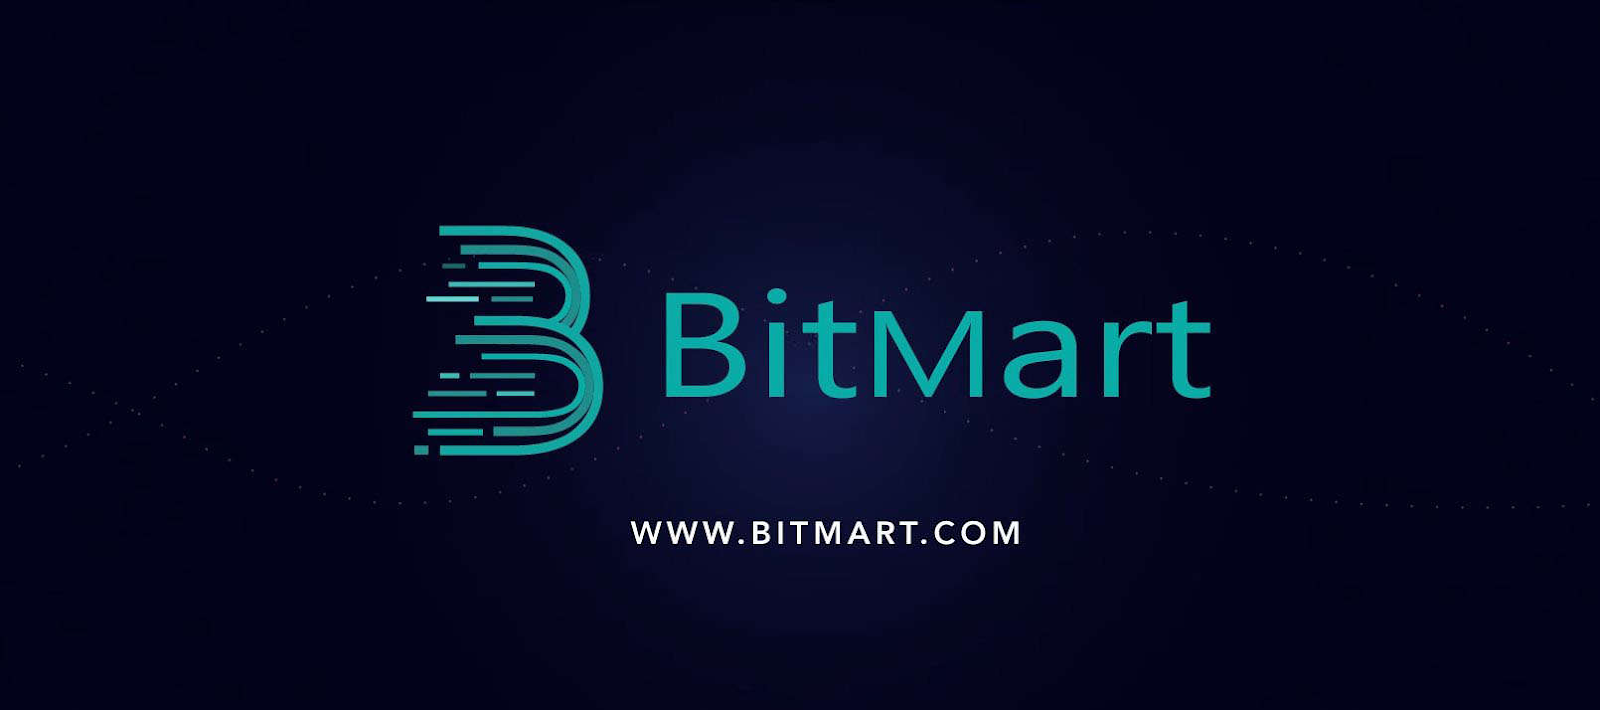 Sàn BitMart